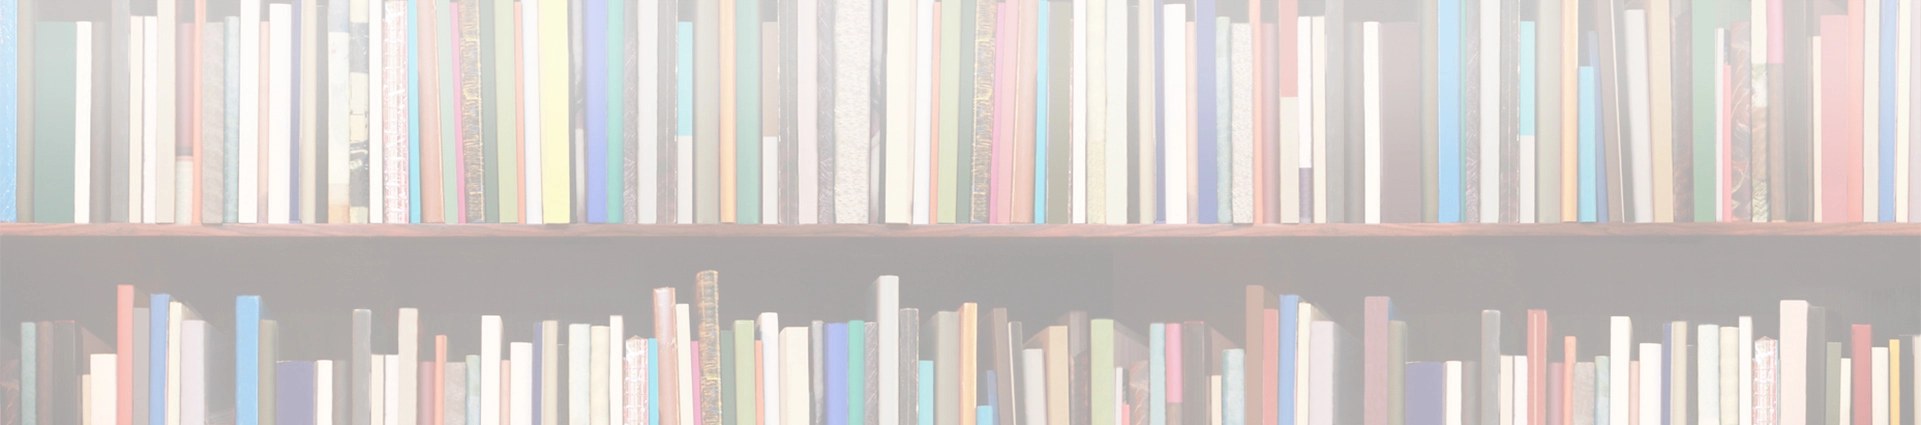 kolorowe książki na półkach księgarni